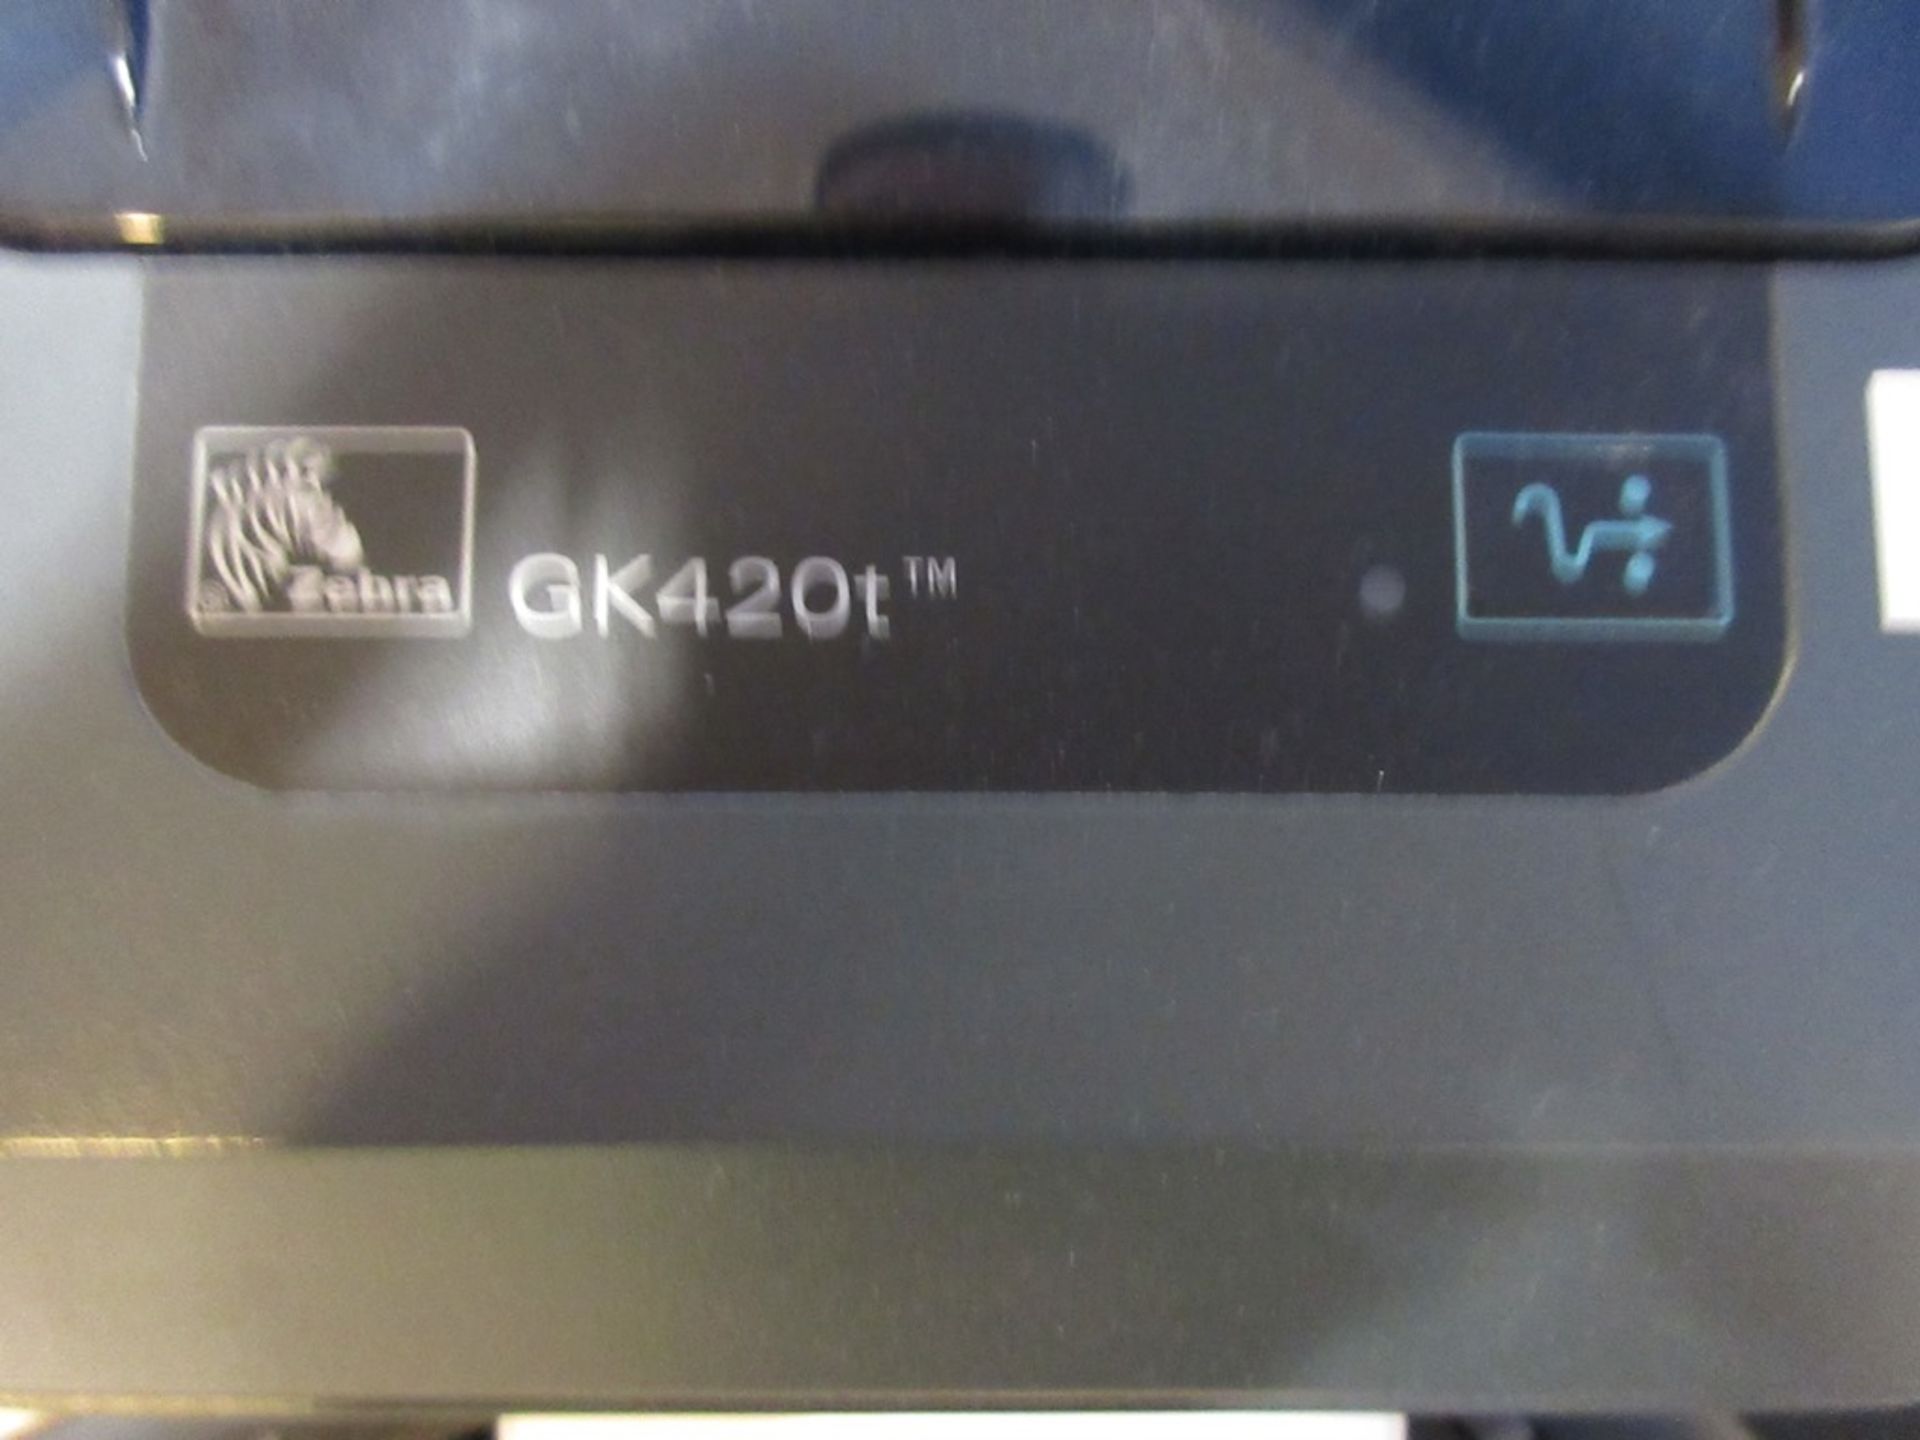 Zebra GK420t bar code printer - Image 2 of 2